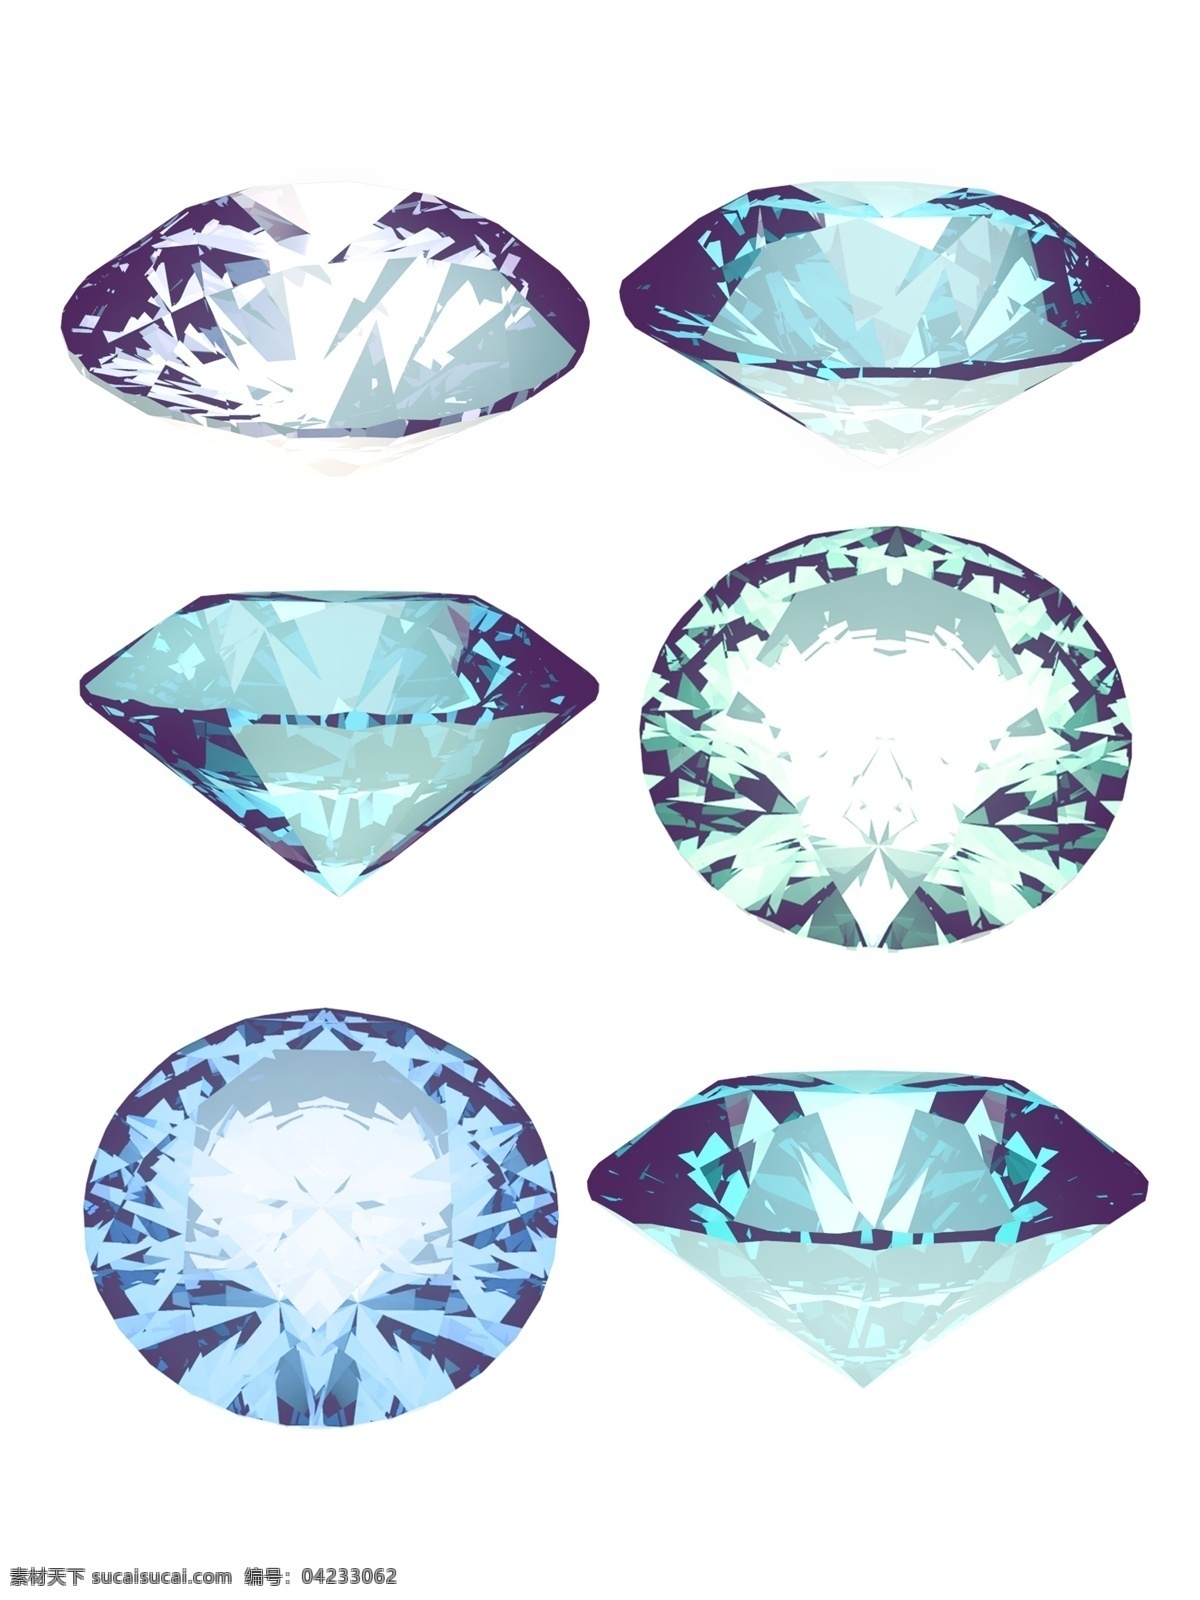 钻石素材 钻石广告 钻戒 奢侈 奢华 钻石元素 彩钻 珠宝素材 钻石图标 钻石图案 婚礼 钻石宝石 金色 钻石 宝石 珠宝首饰 金色素材 钻石金色